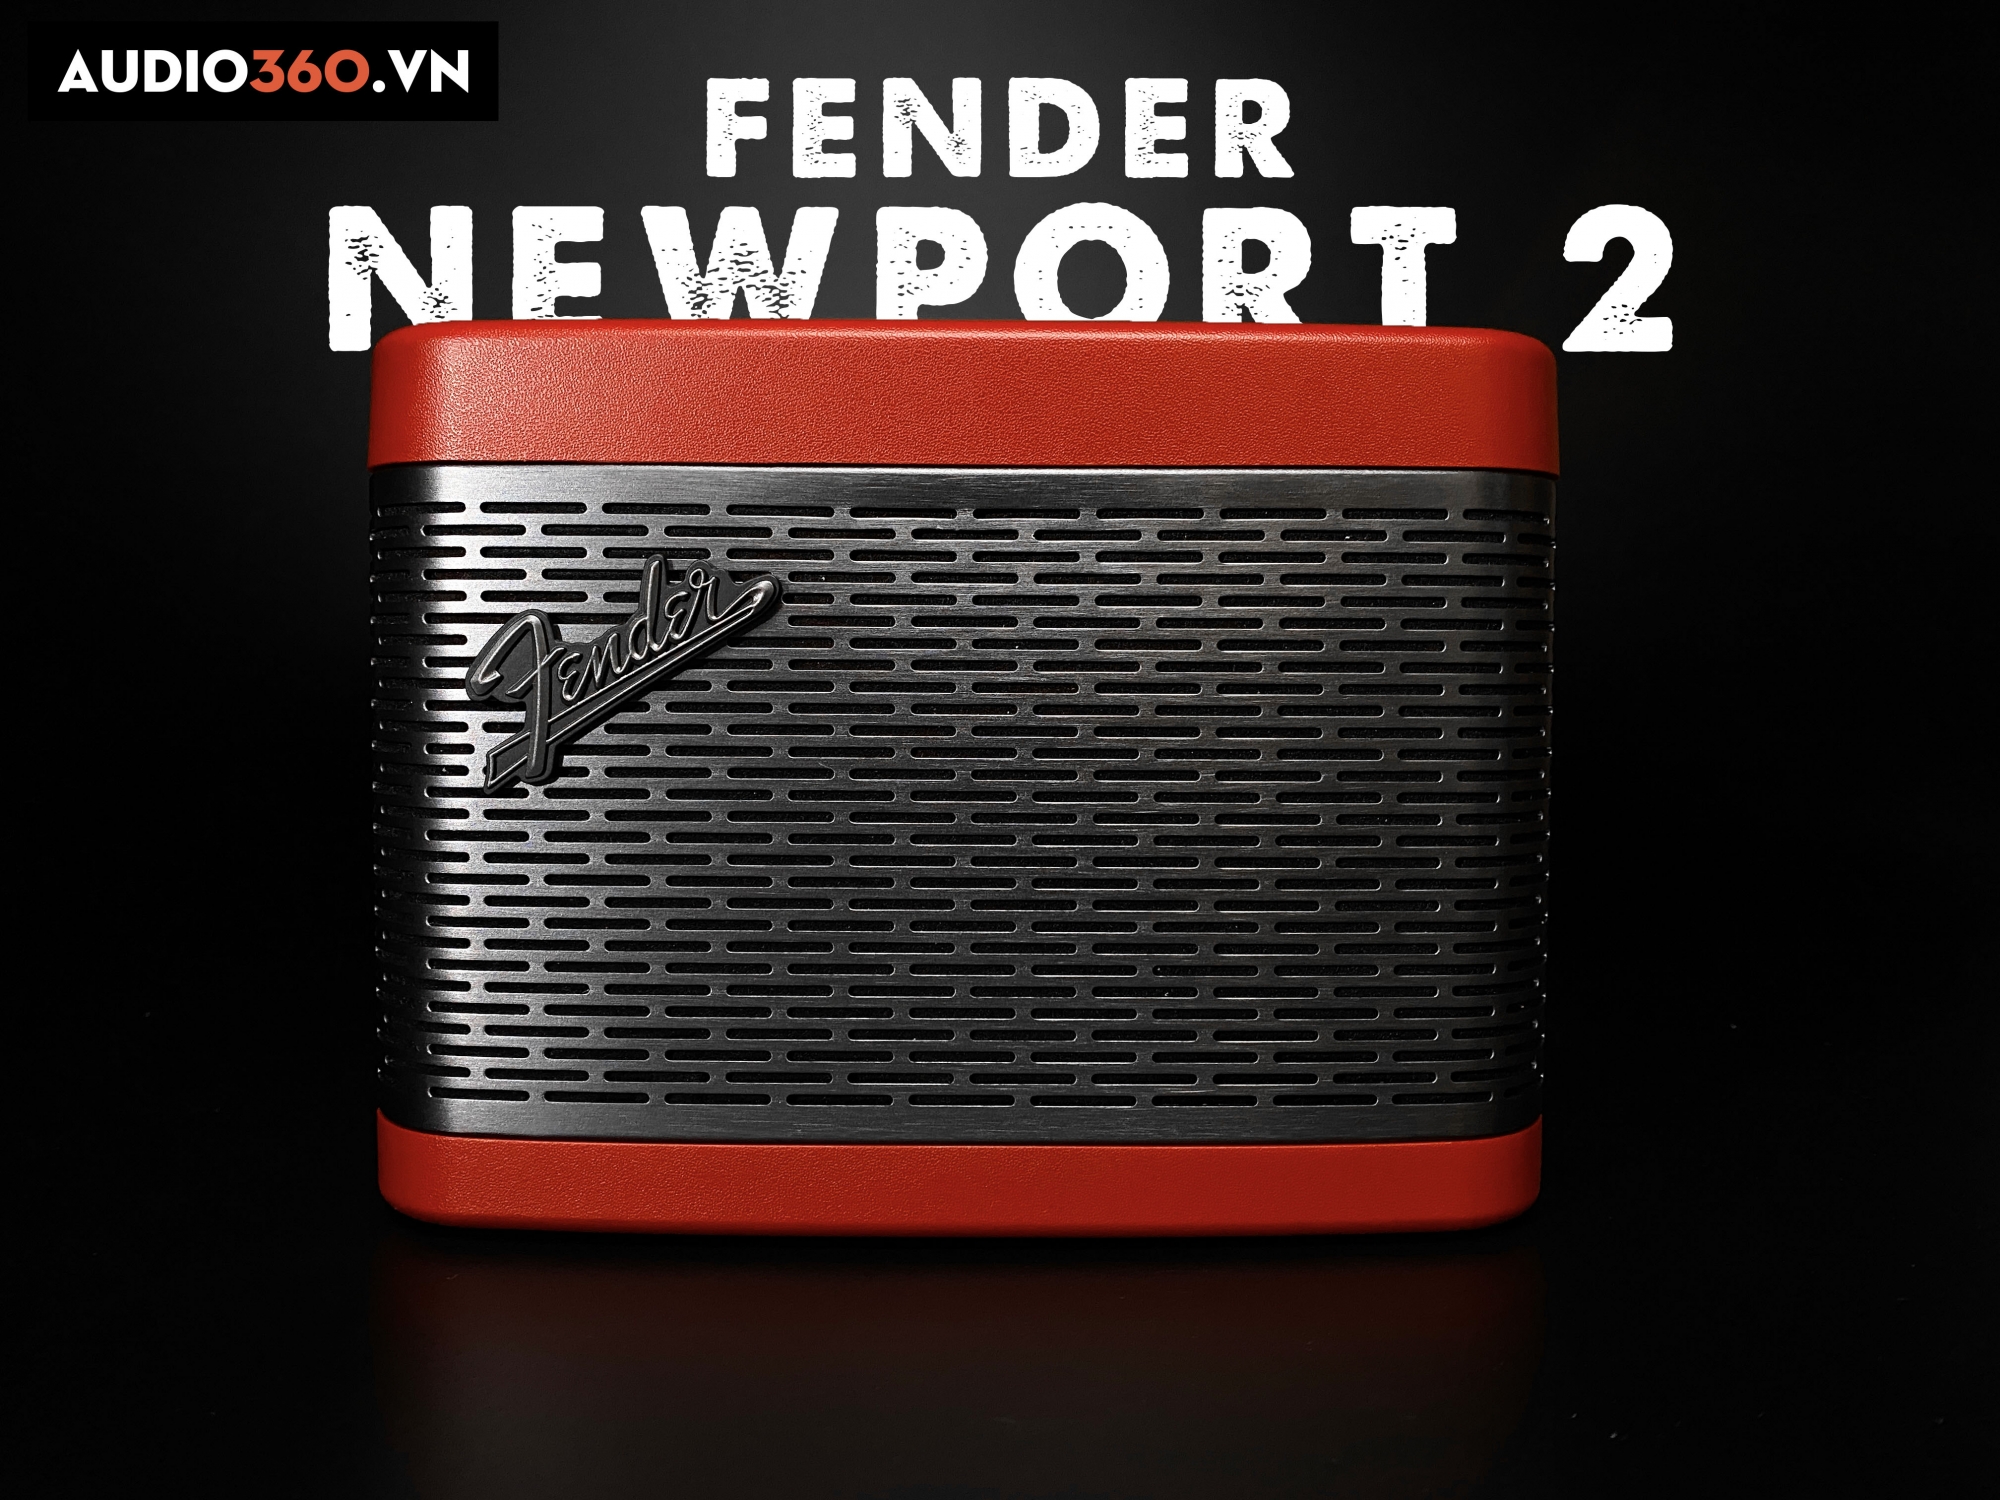 Fender Newport II - Chất âm mạnh mẽ trong thiết kế nhỏ gọn.